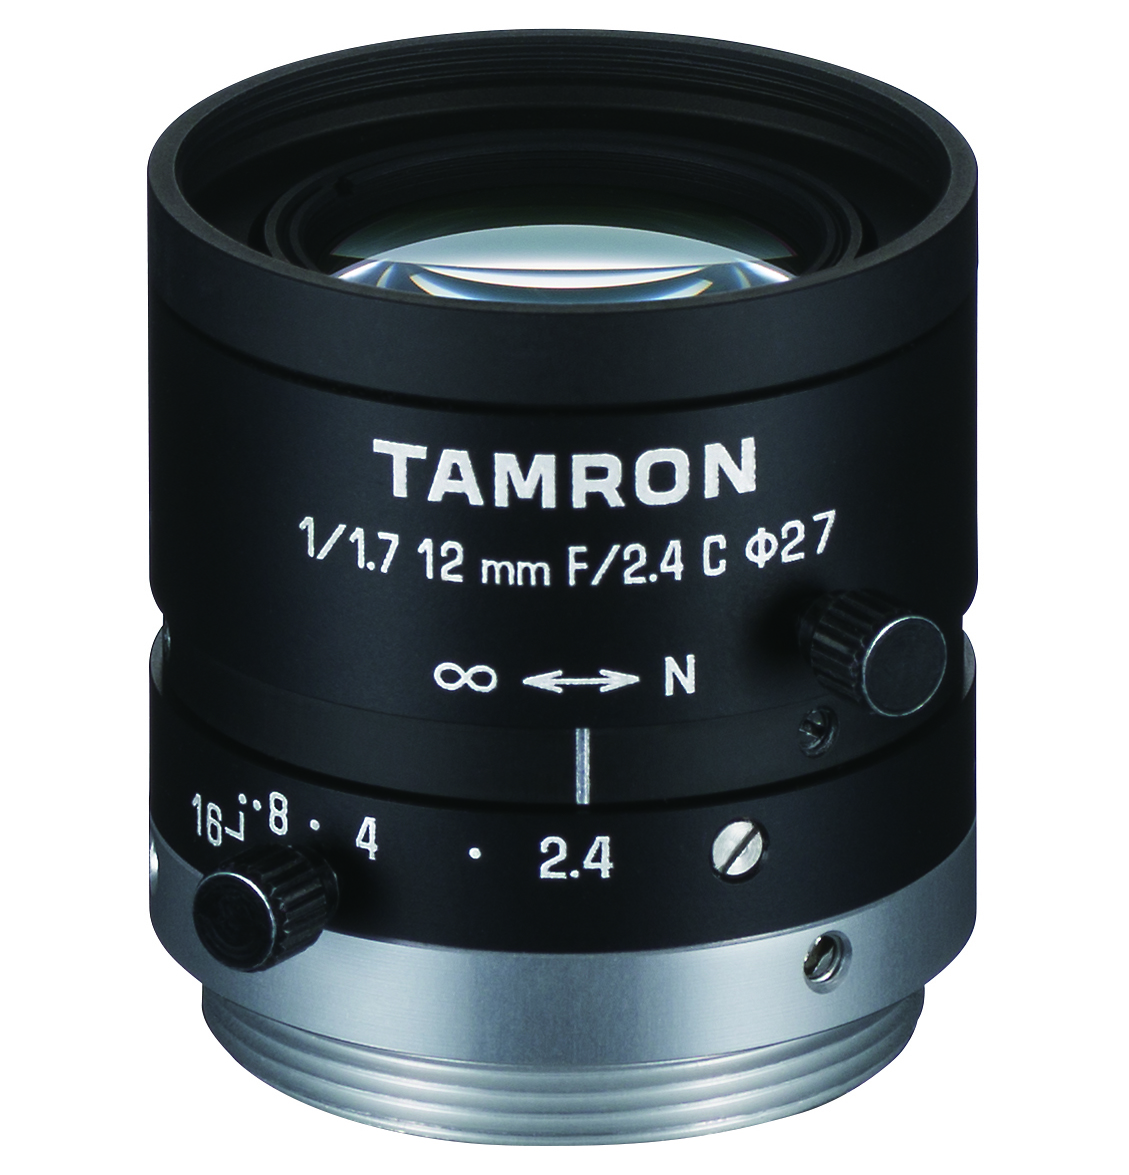 lens: Model M117FM12